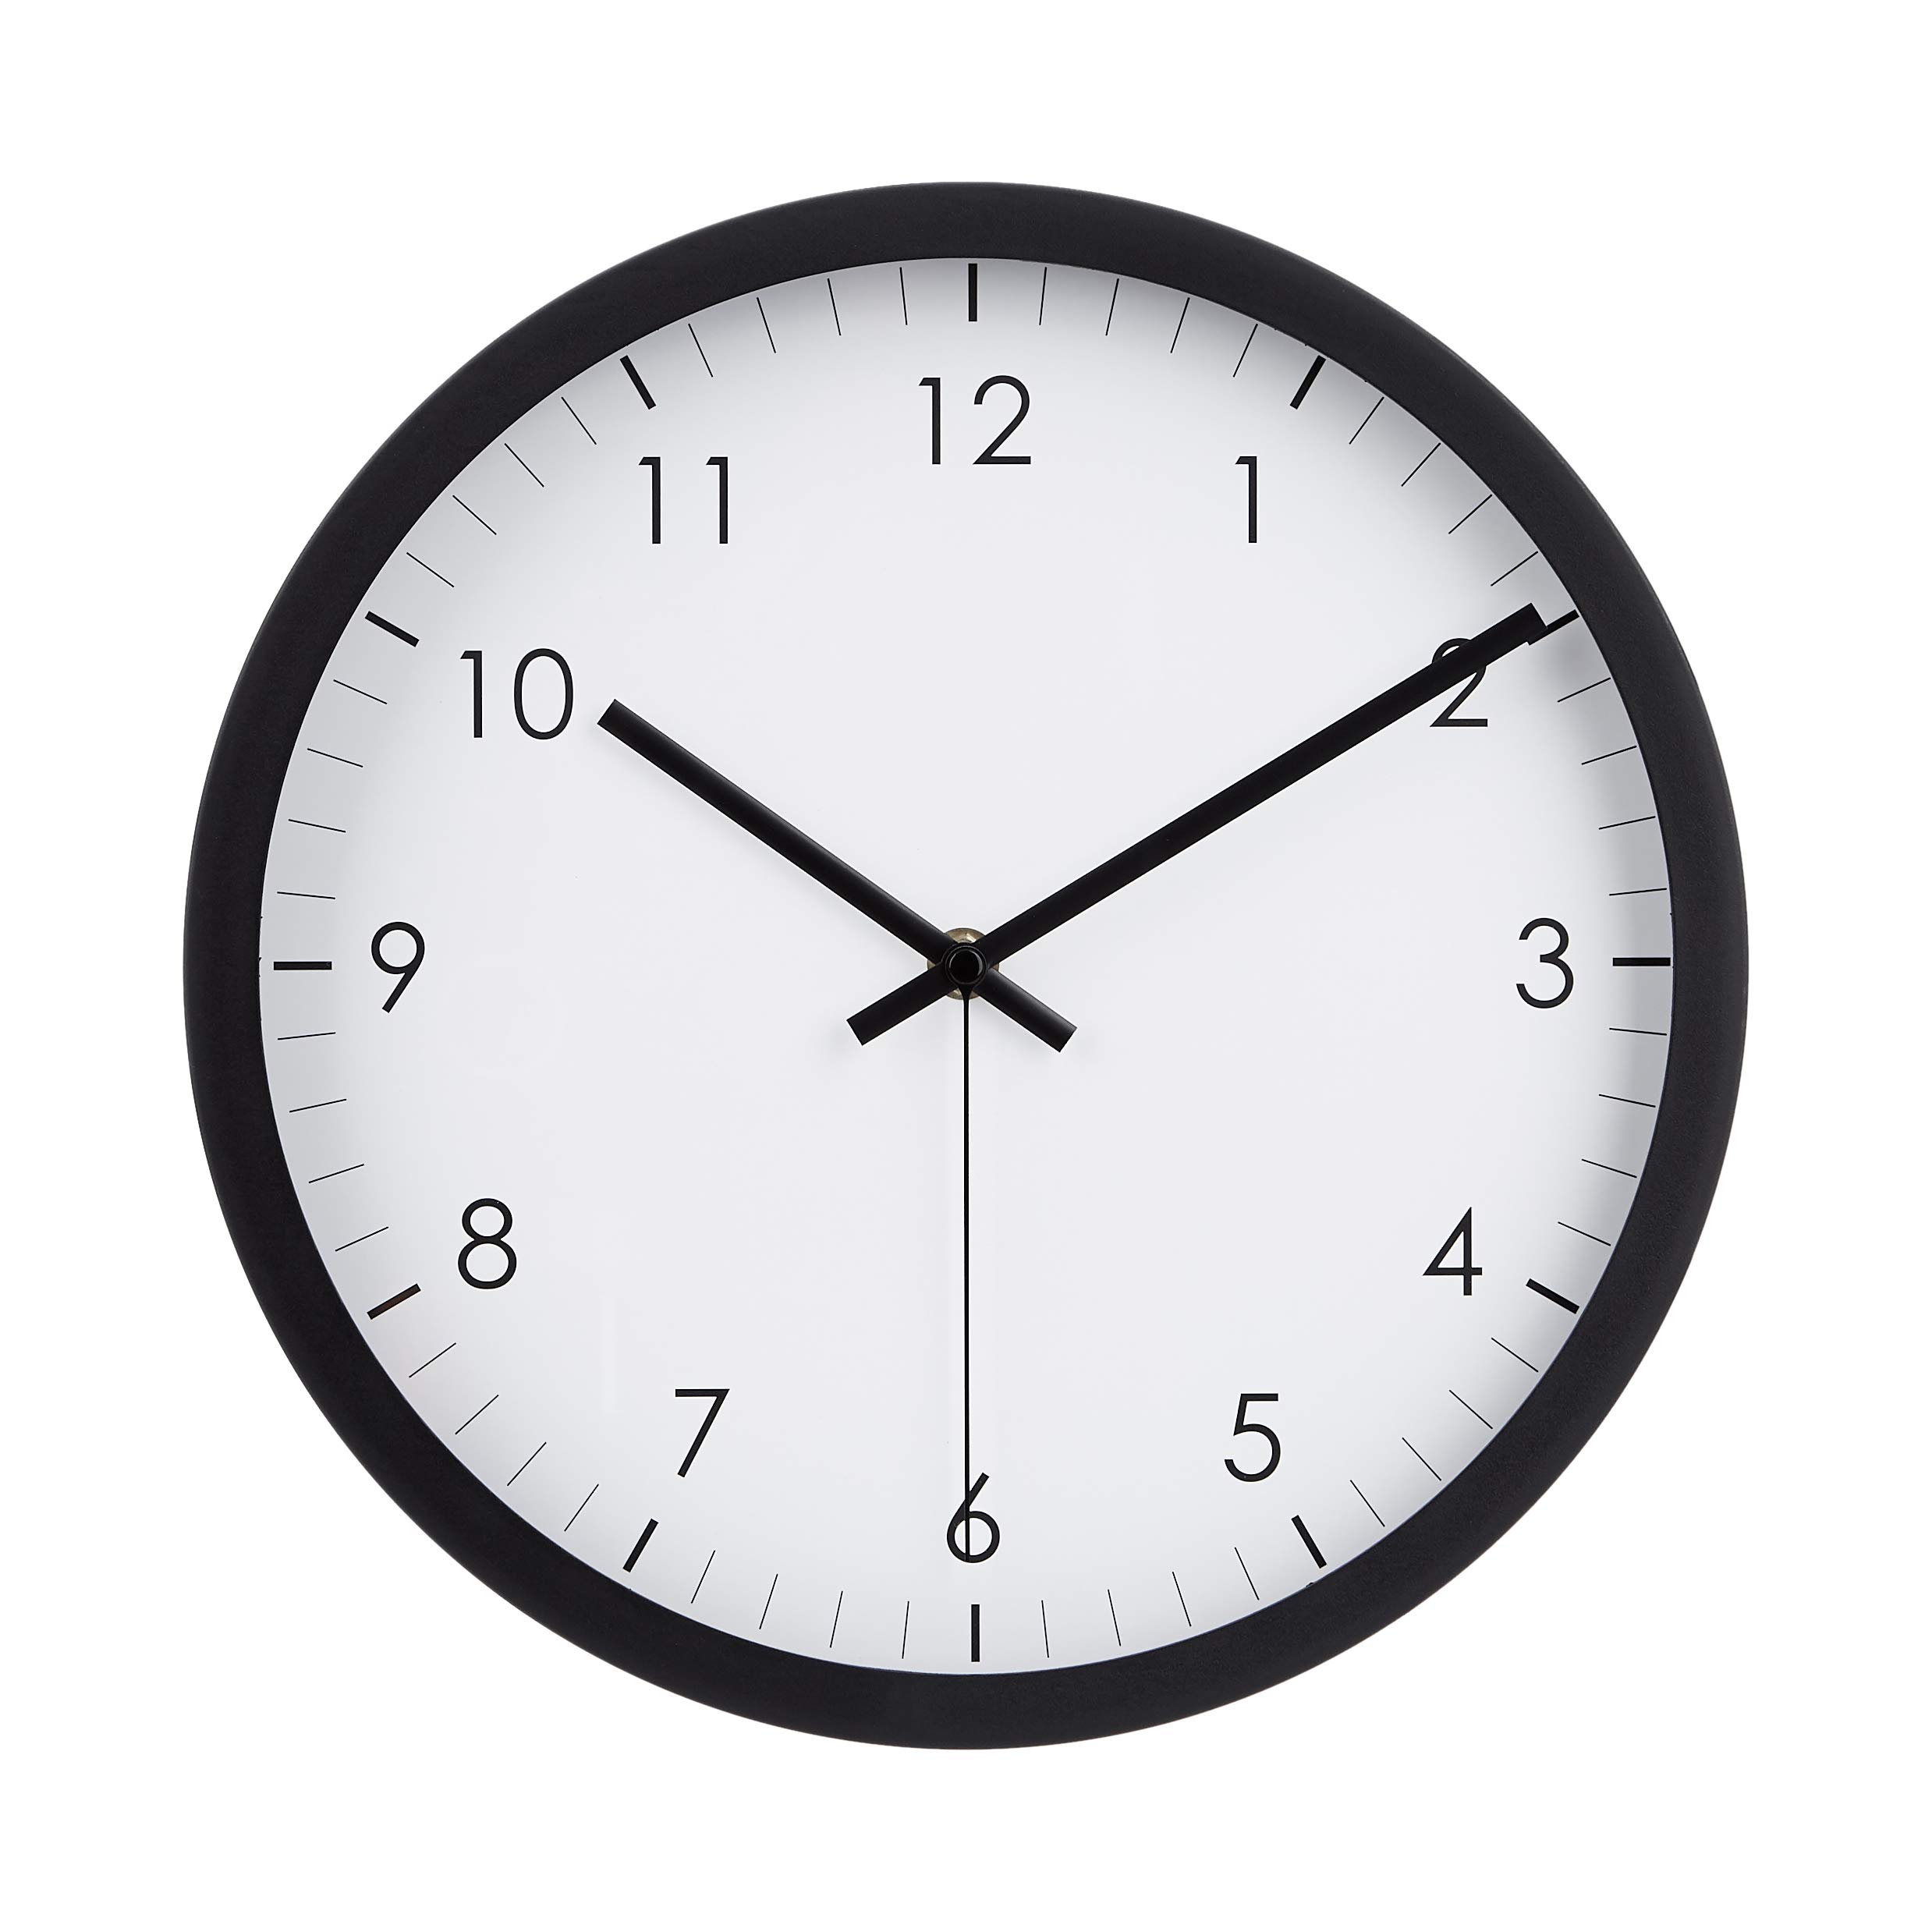 Amazon Basics Wall Clock